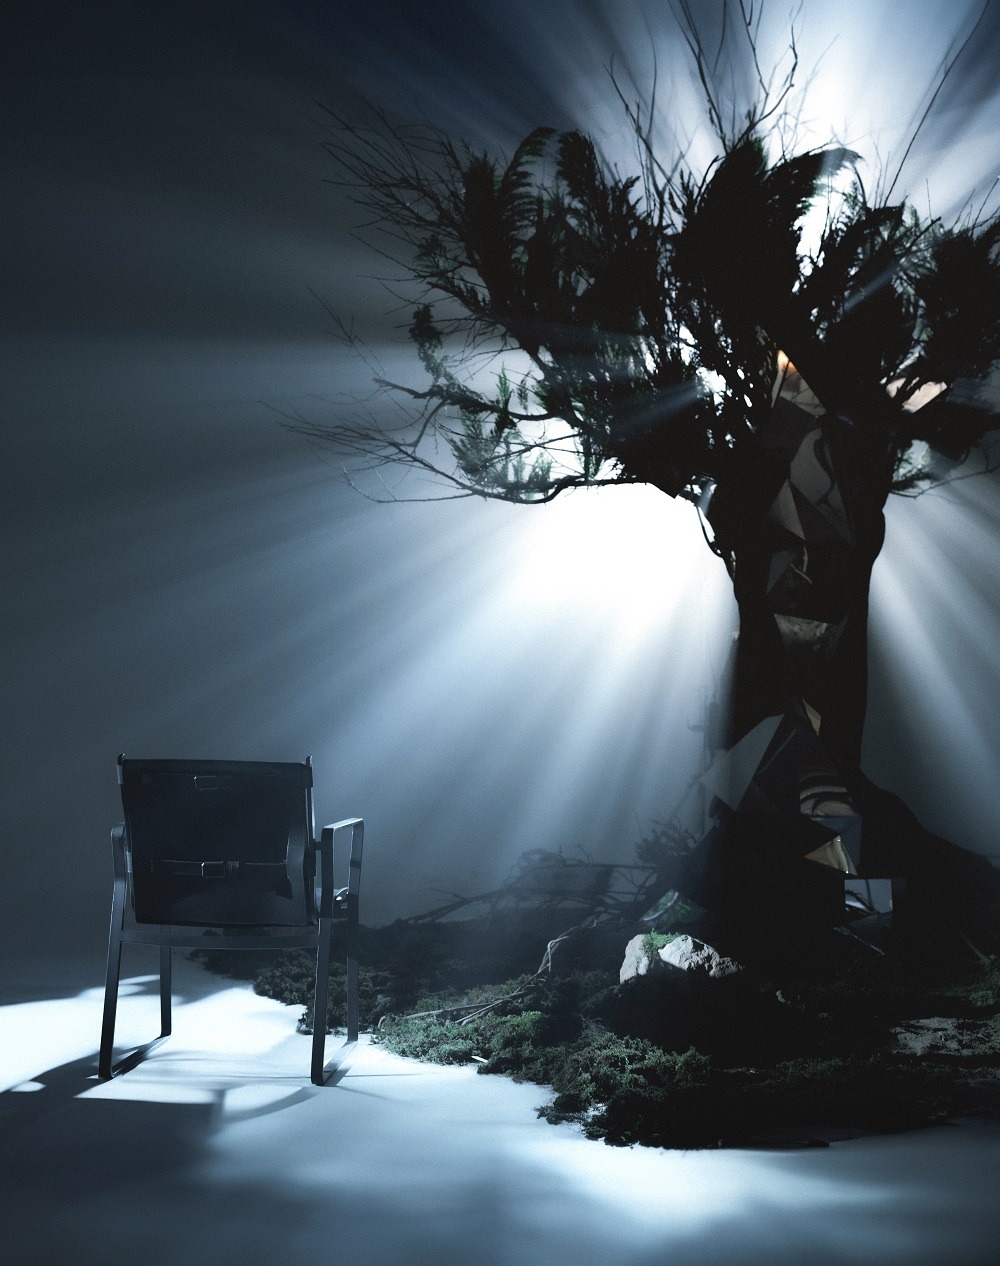 روایتی از سرو و مهر در کمپین "درخت نور" درسا